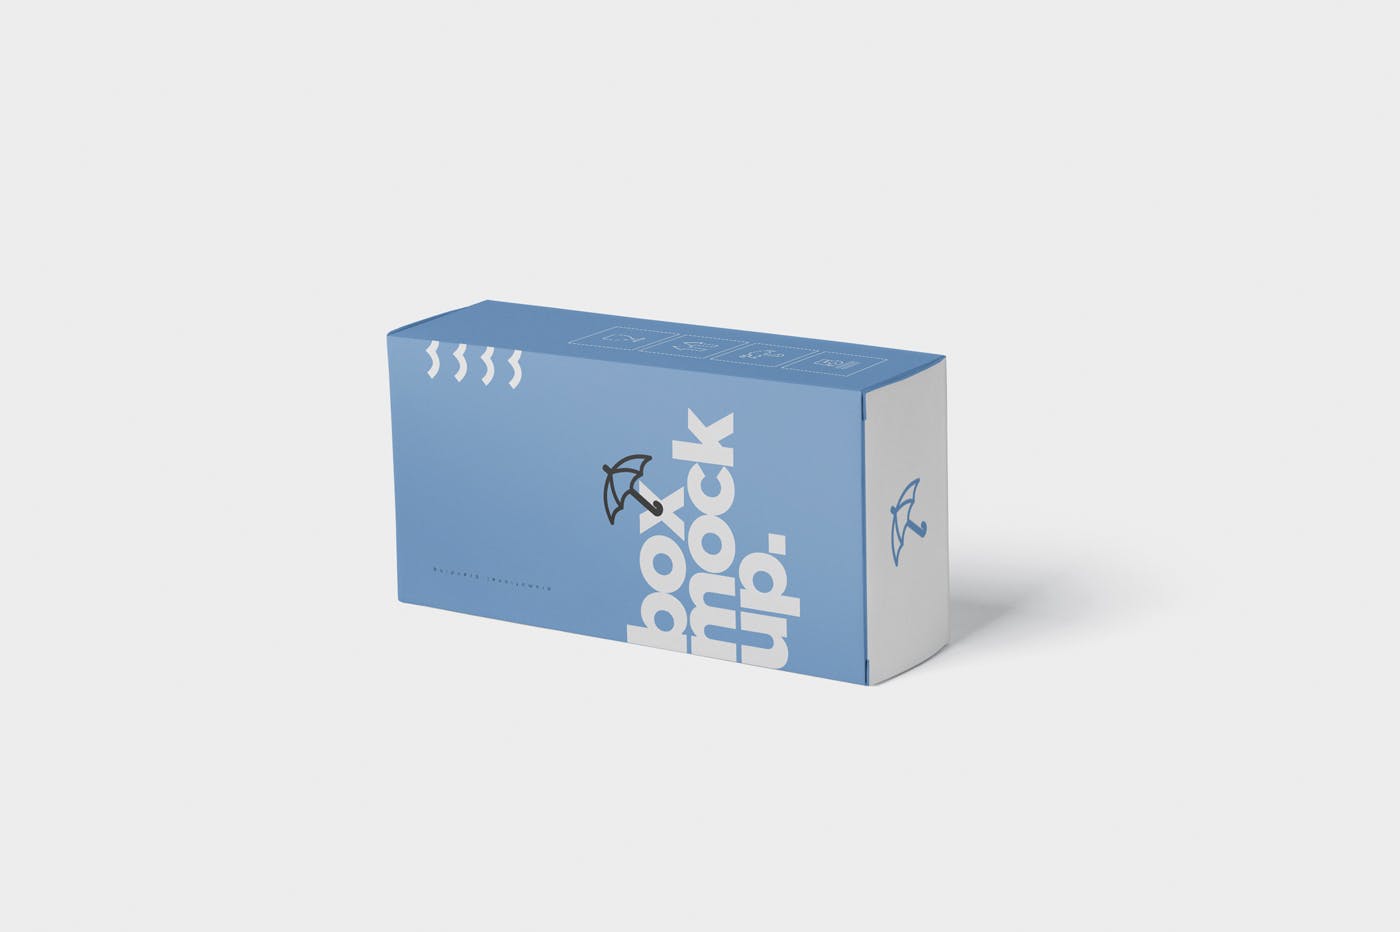 避孕套包装盒外观设计第一素材精选模板 Box Mockup  Long Vertical Rectangle插图(2)